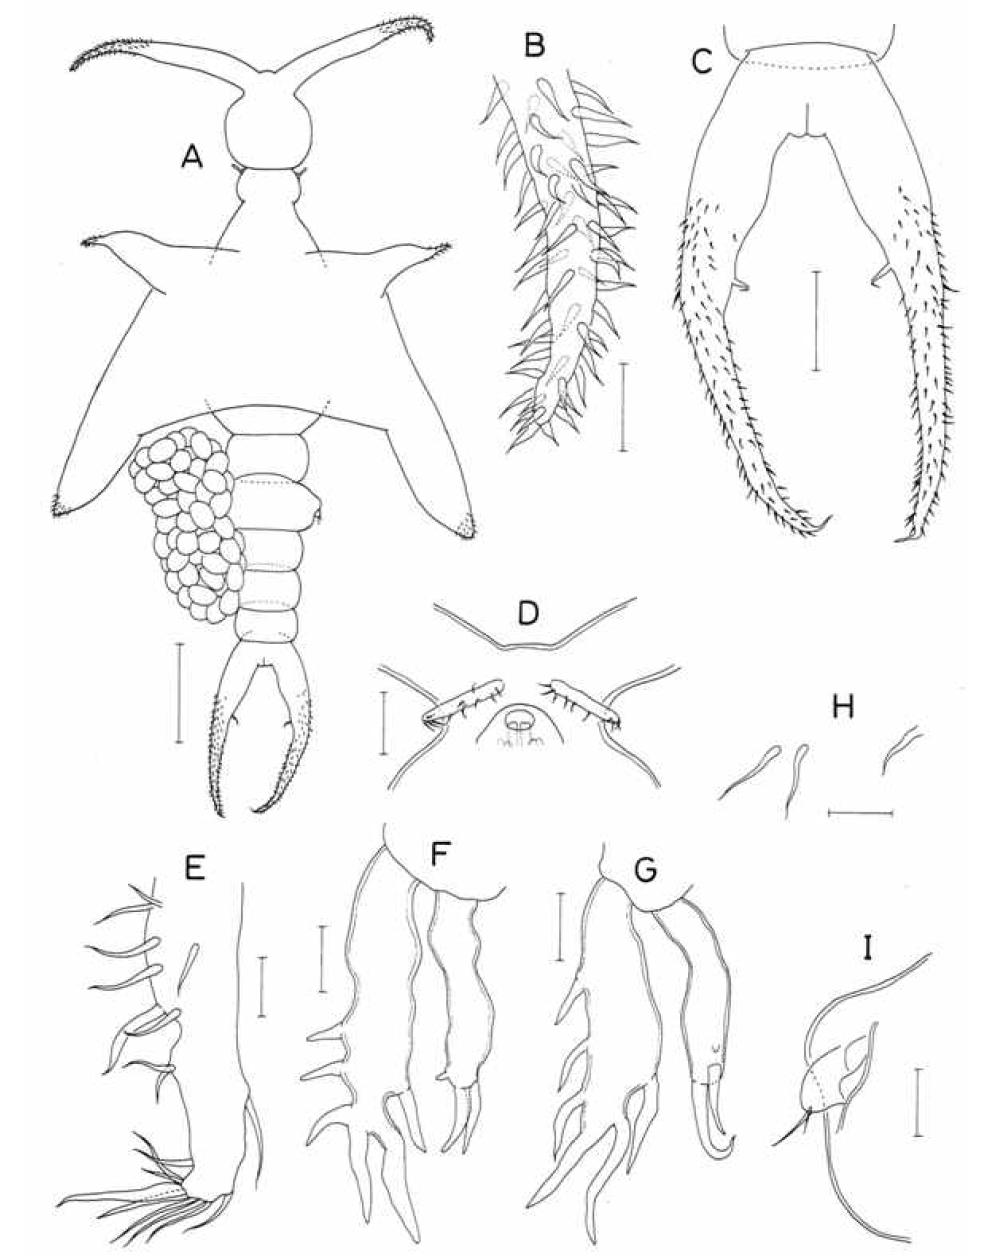 Colobomatus n. sp., female